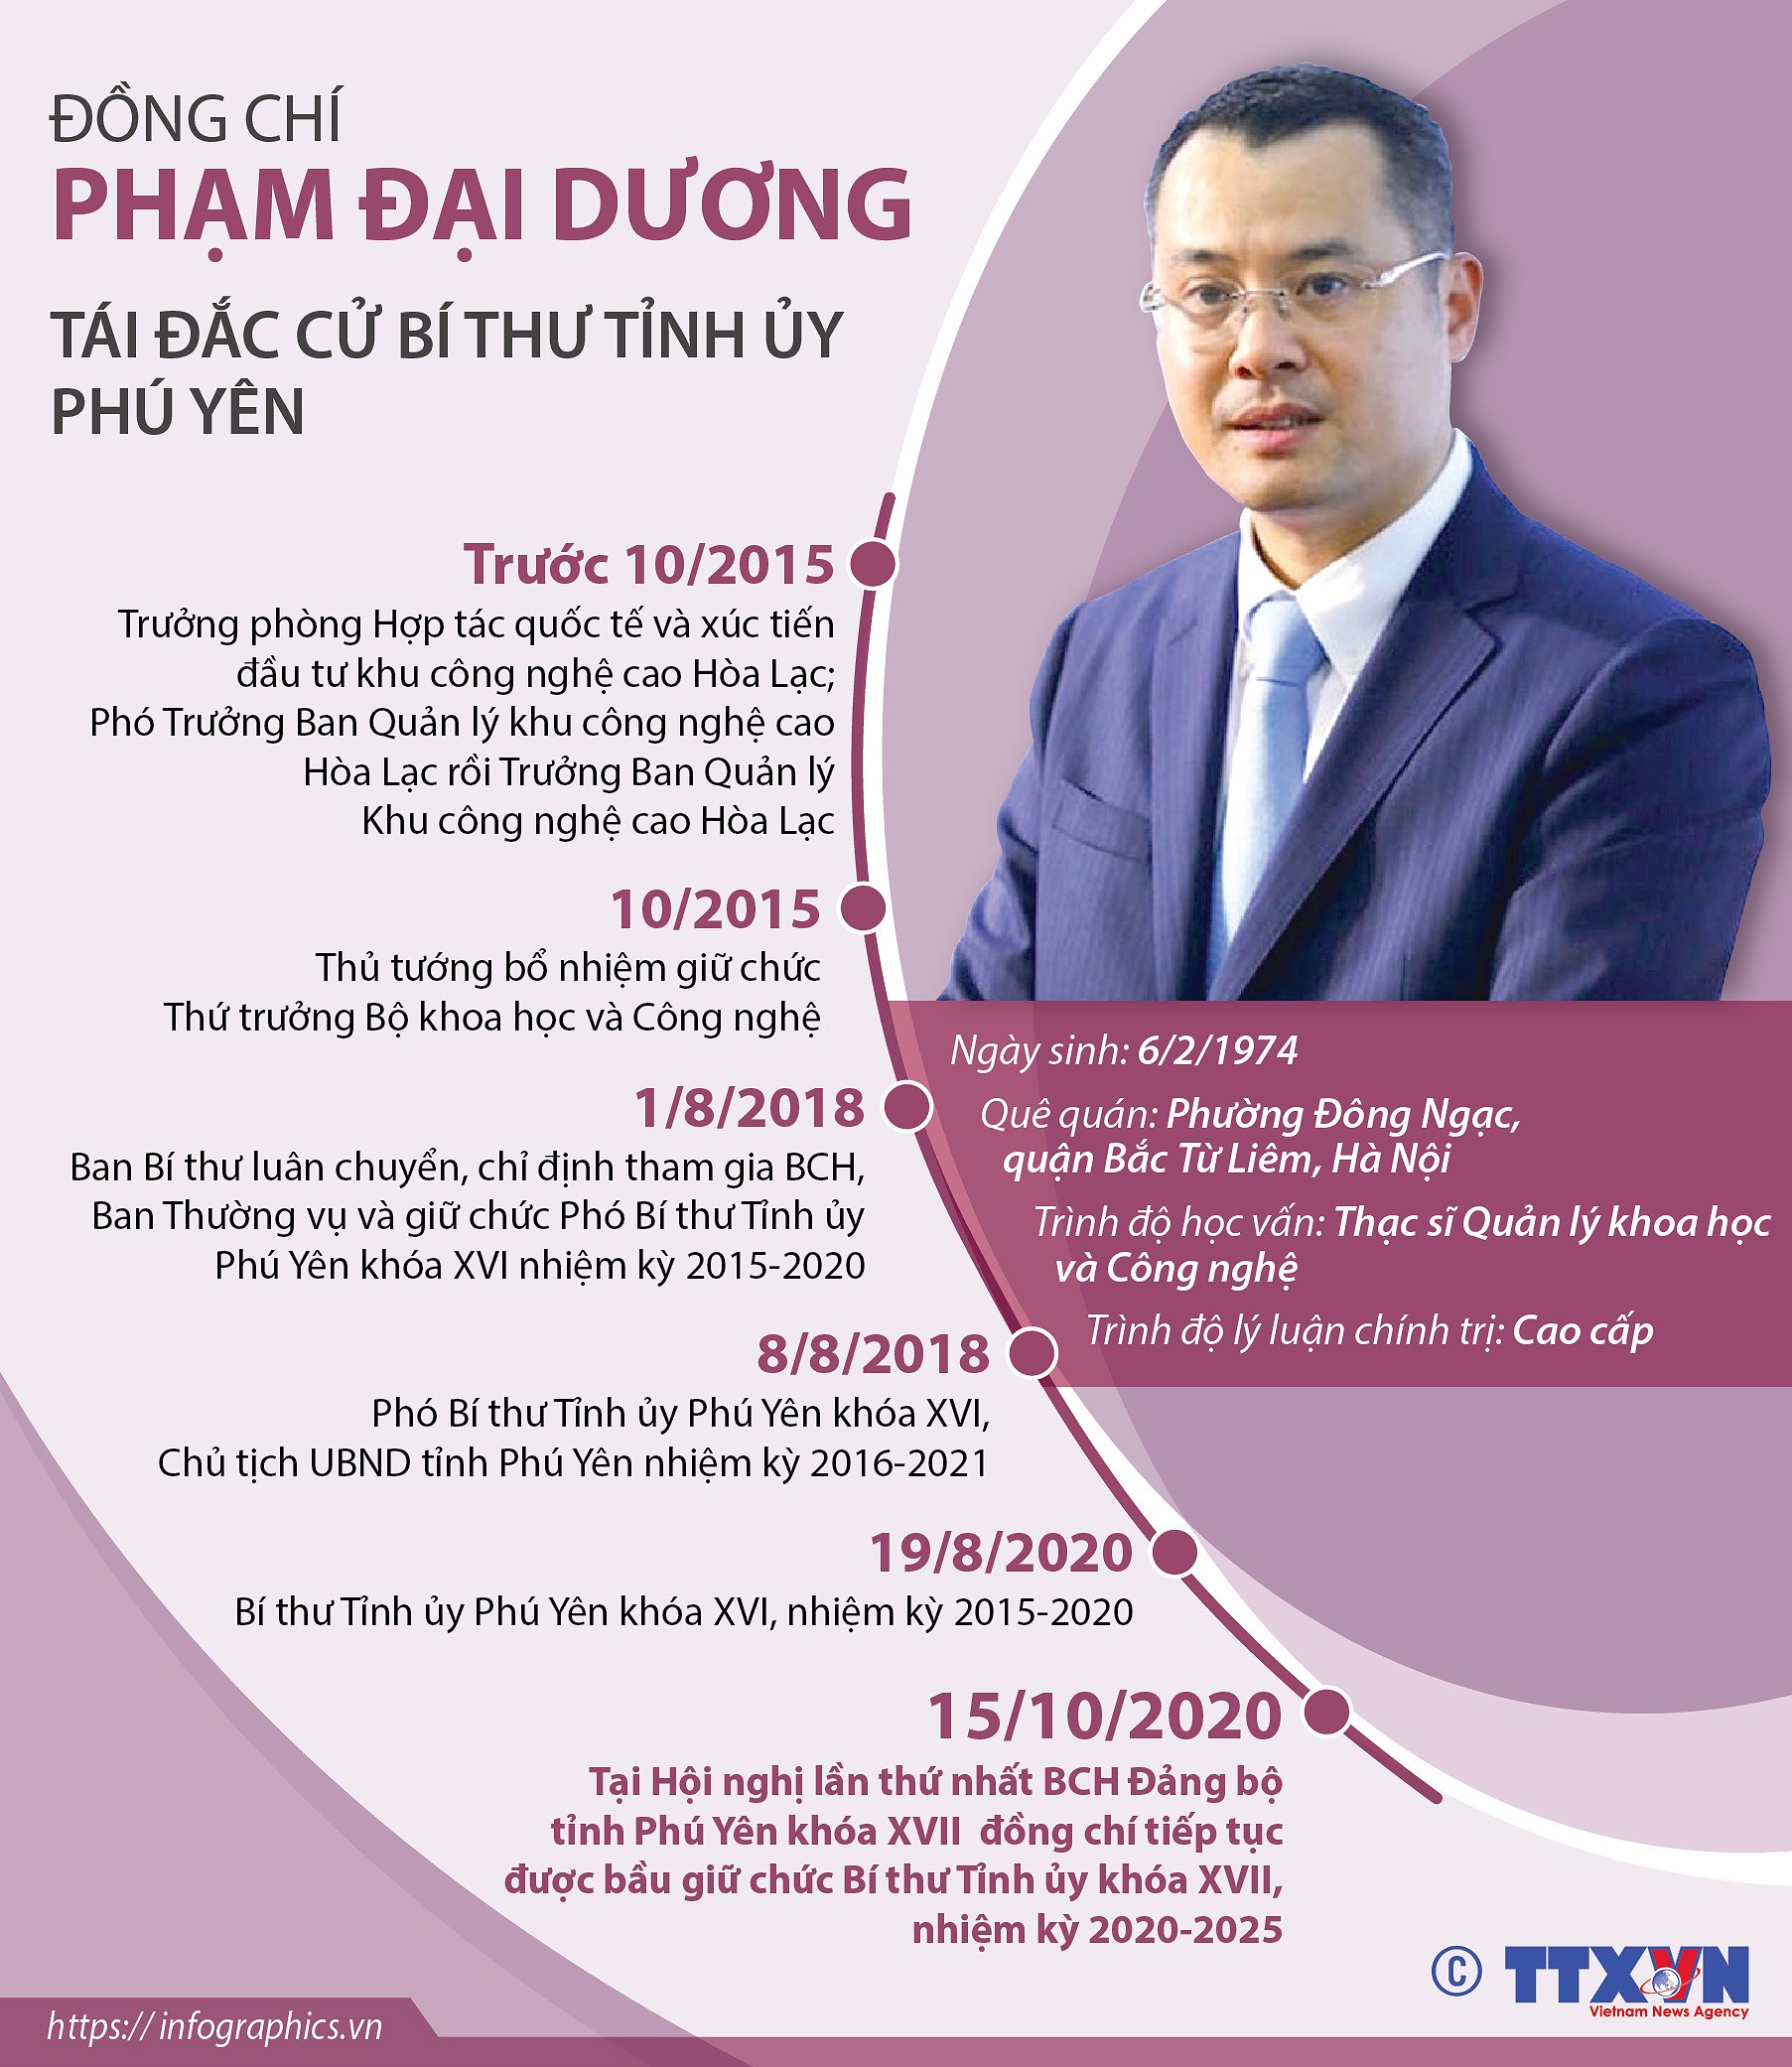 [Infographics] Ong Pham Dai Duong tai dac cu Bi thu Tinh uy Phu Yen hinh anh 1